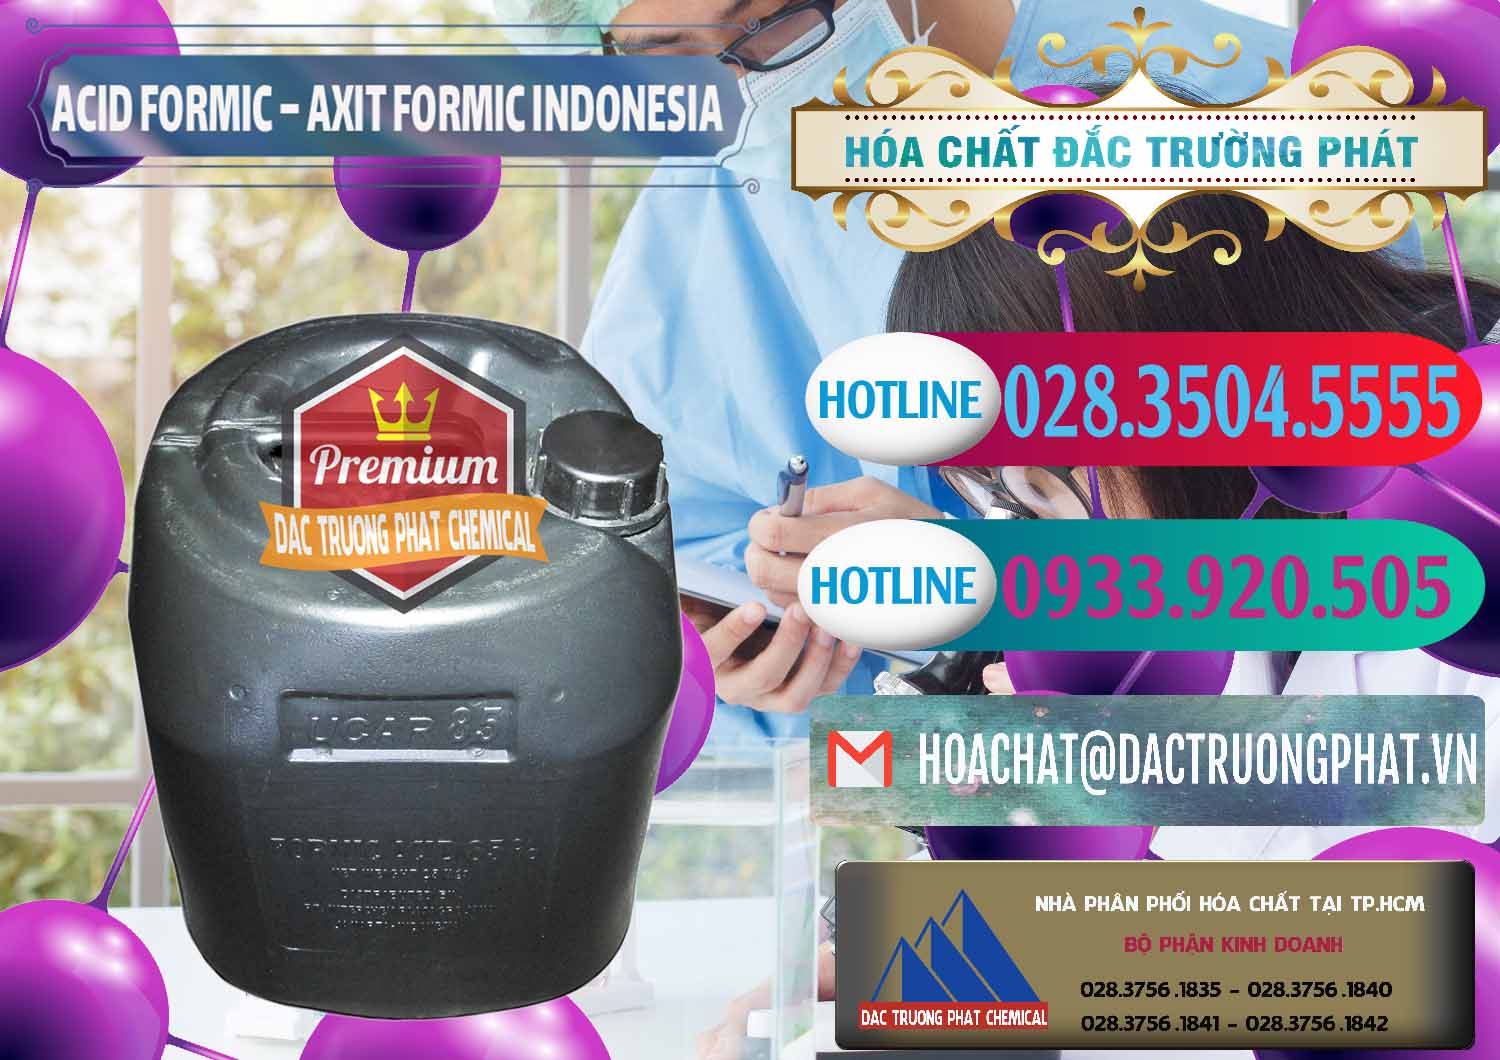 Đơn vị bán & cung cấp Acid Formic - Axit Formic Indonesia - 0026 - Cung ứng & phân phối hóa chất tại TP.HCM - truongphat.vn